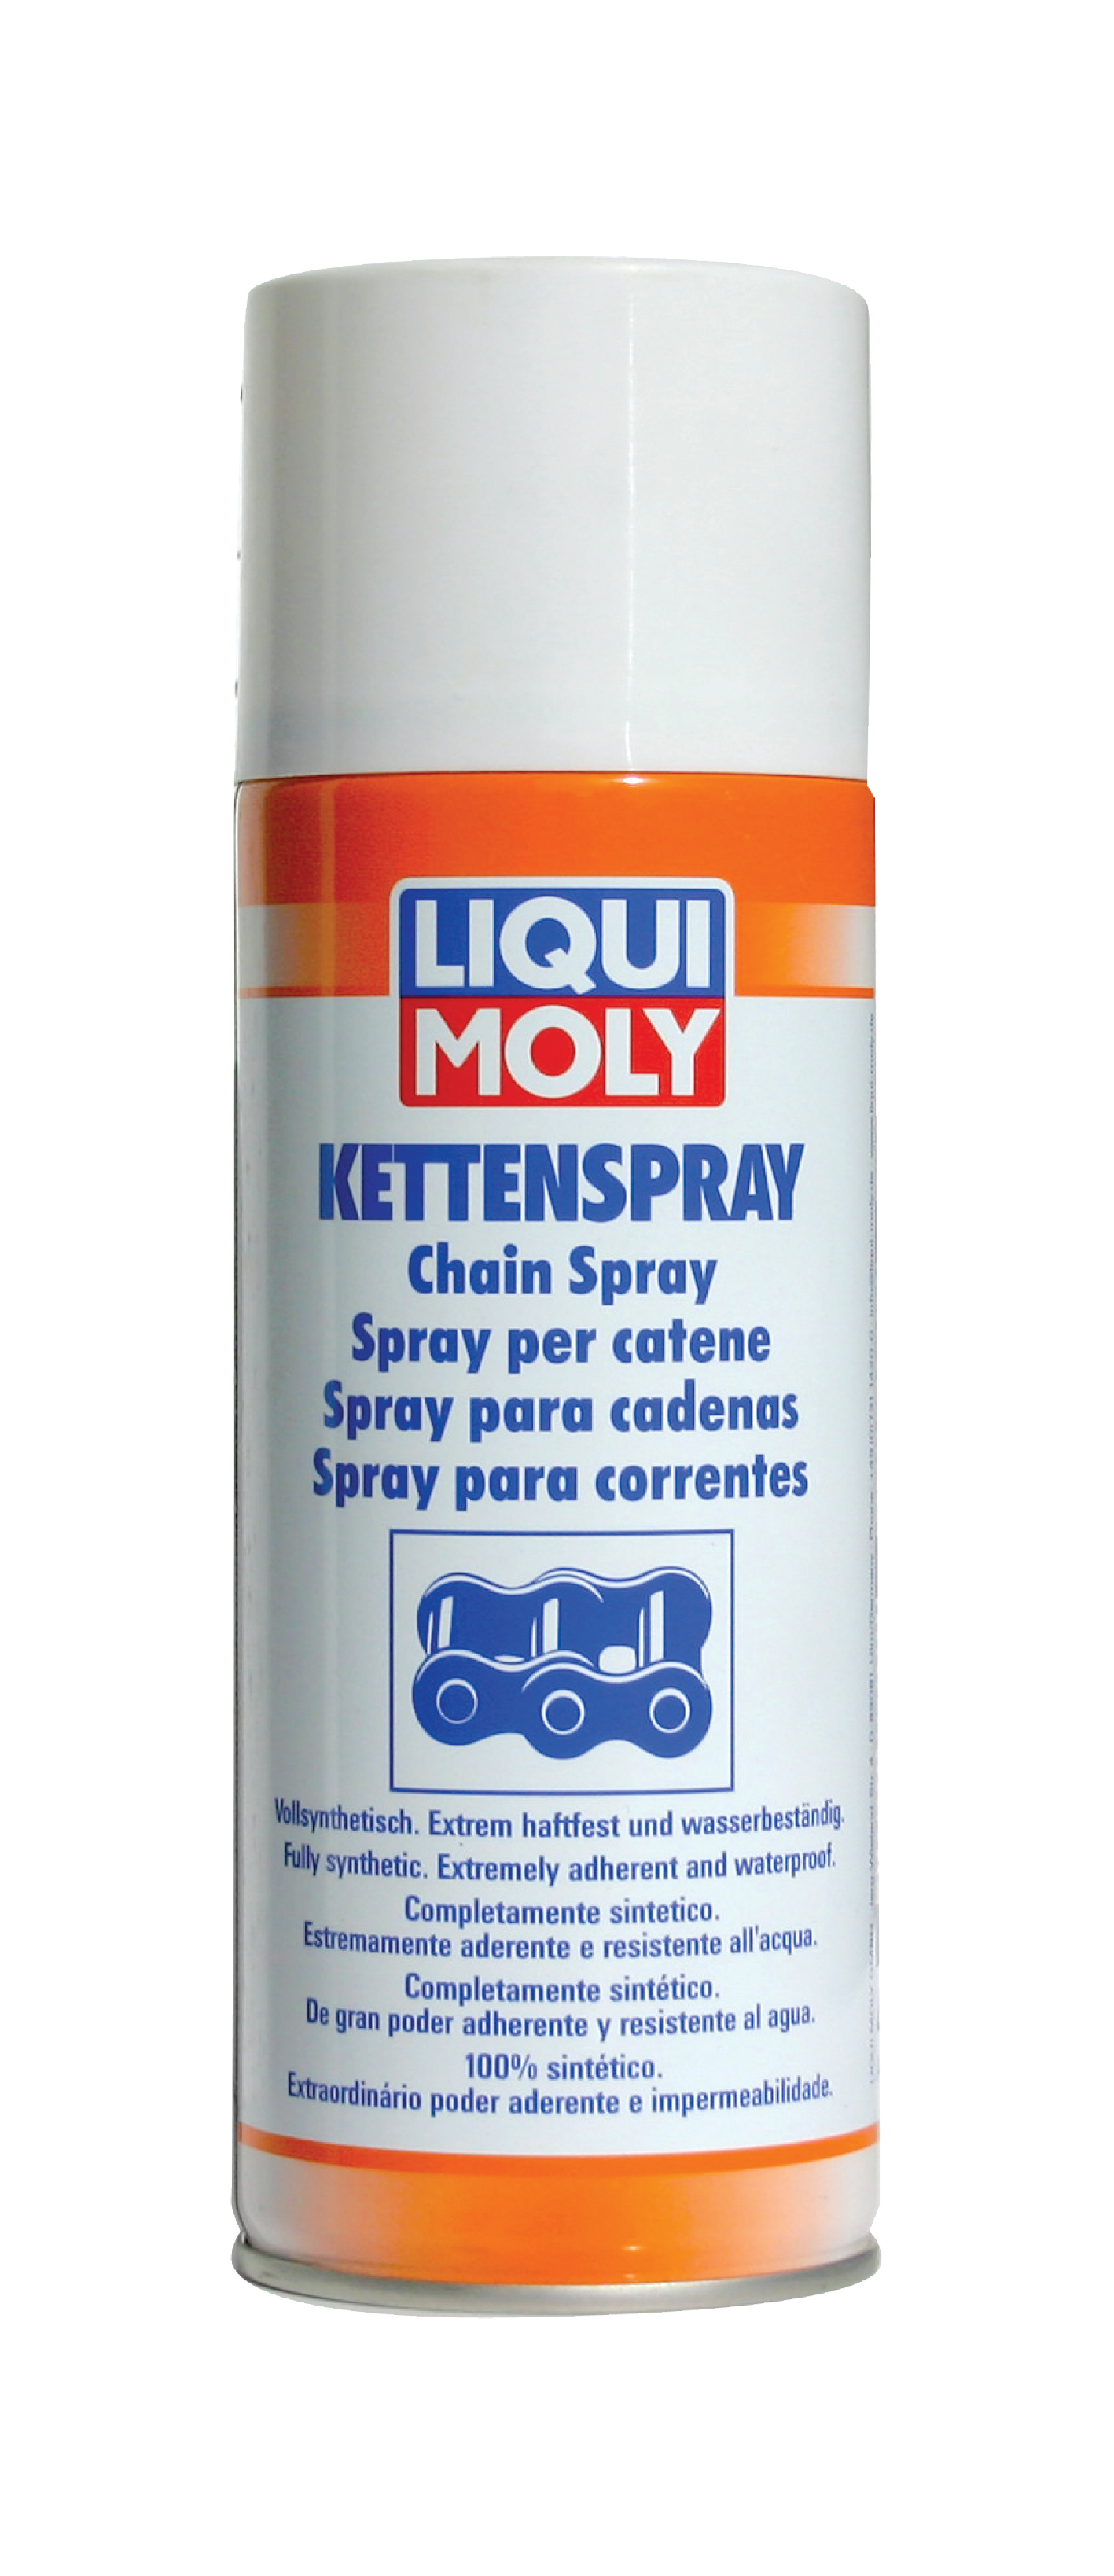 Спрей по уходу за цепями Kettenspray 0,4л